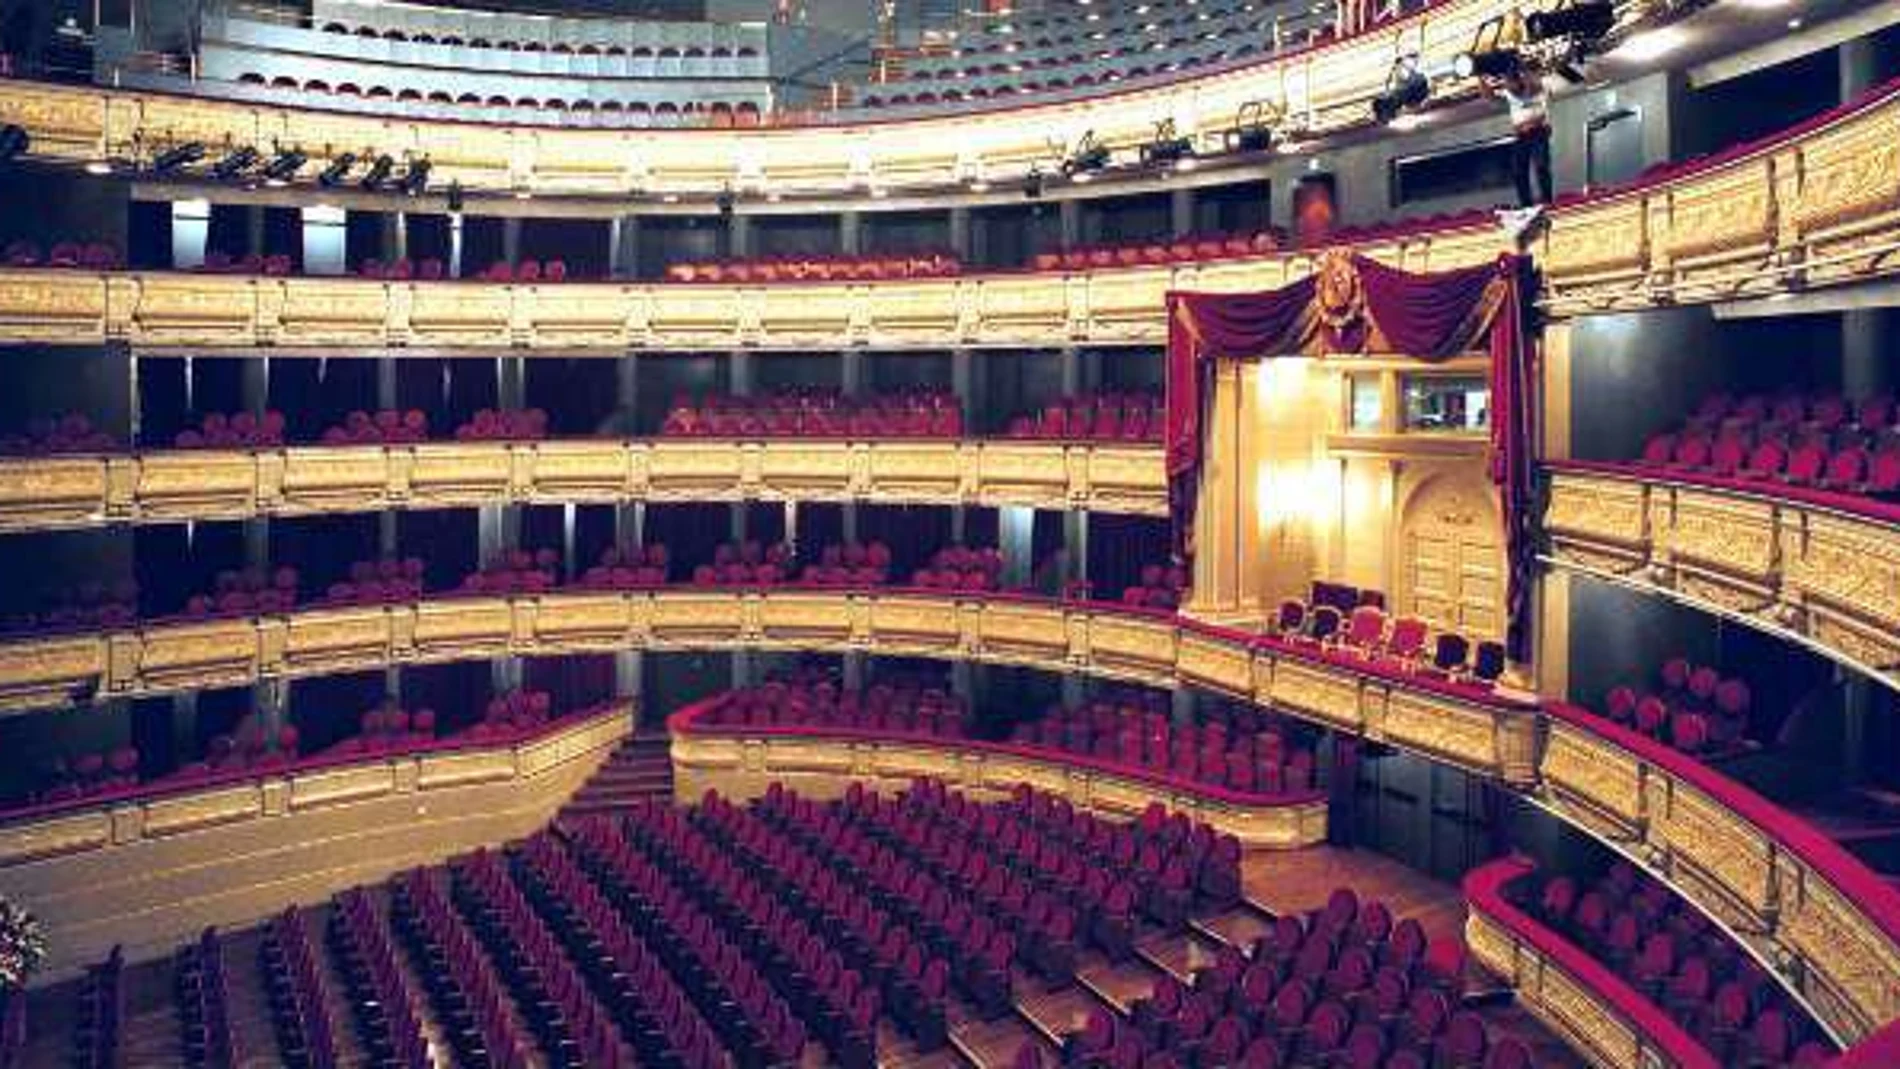 Teatro Real, mucho más que ópera